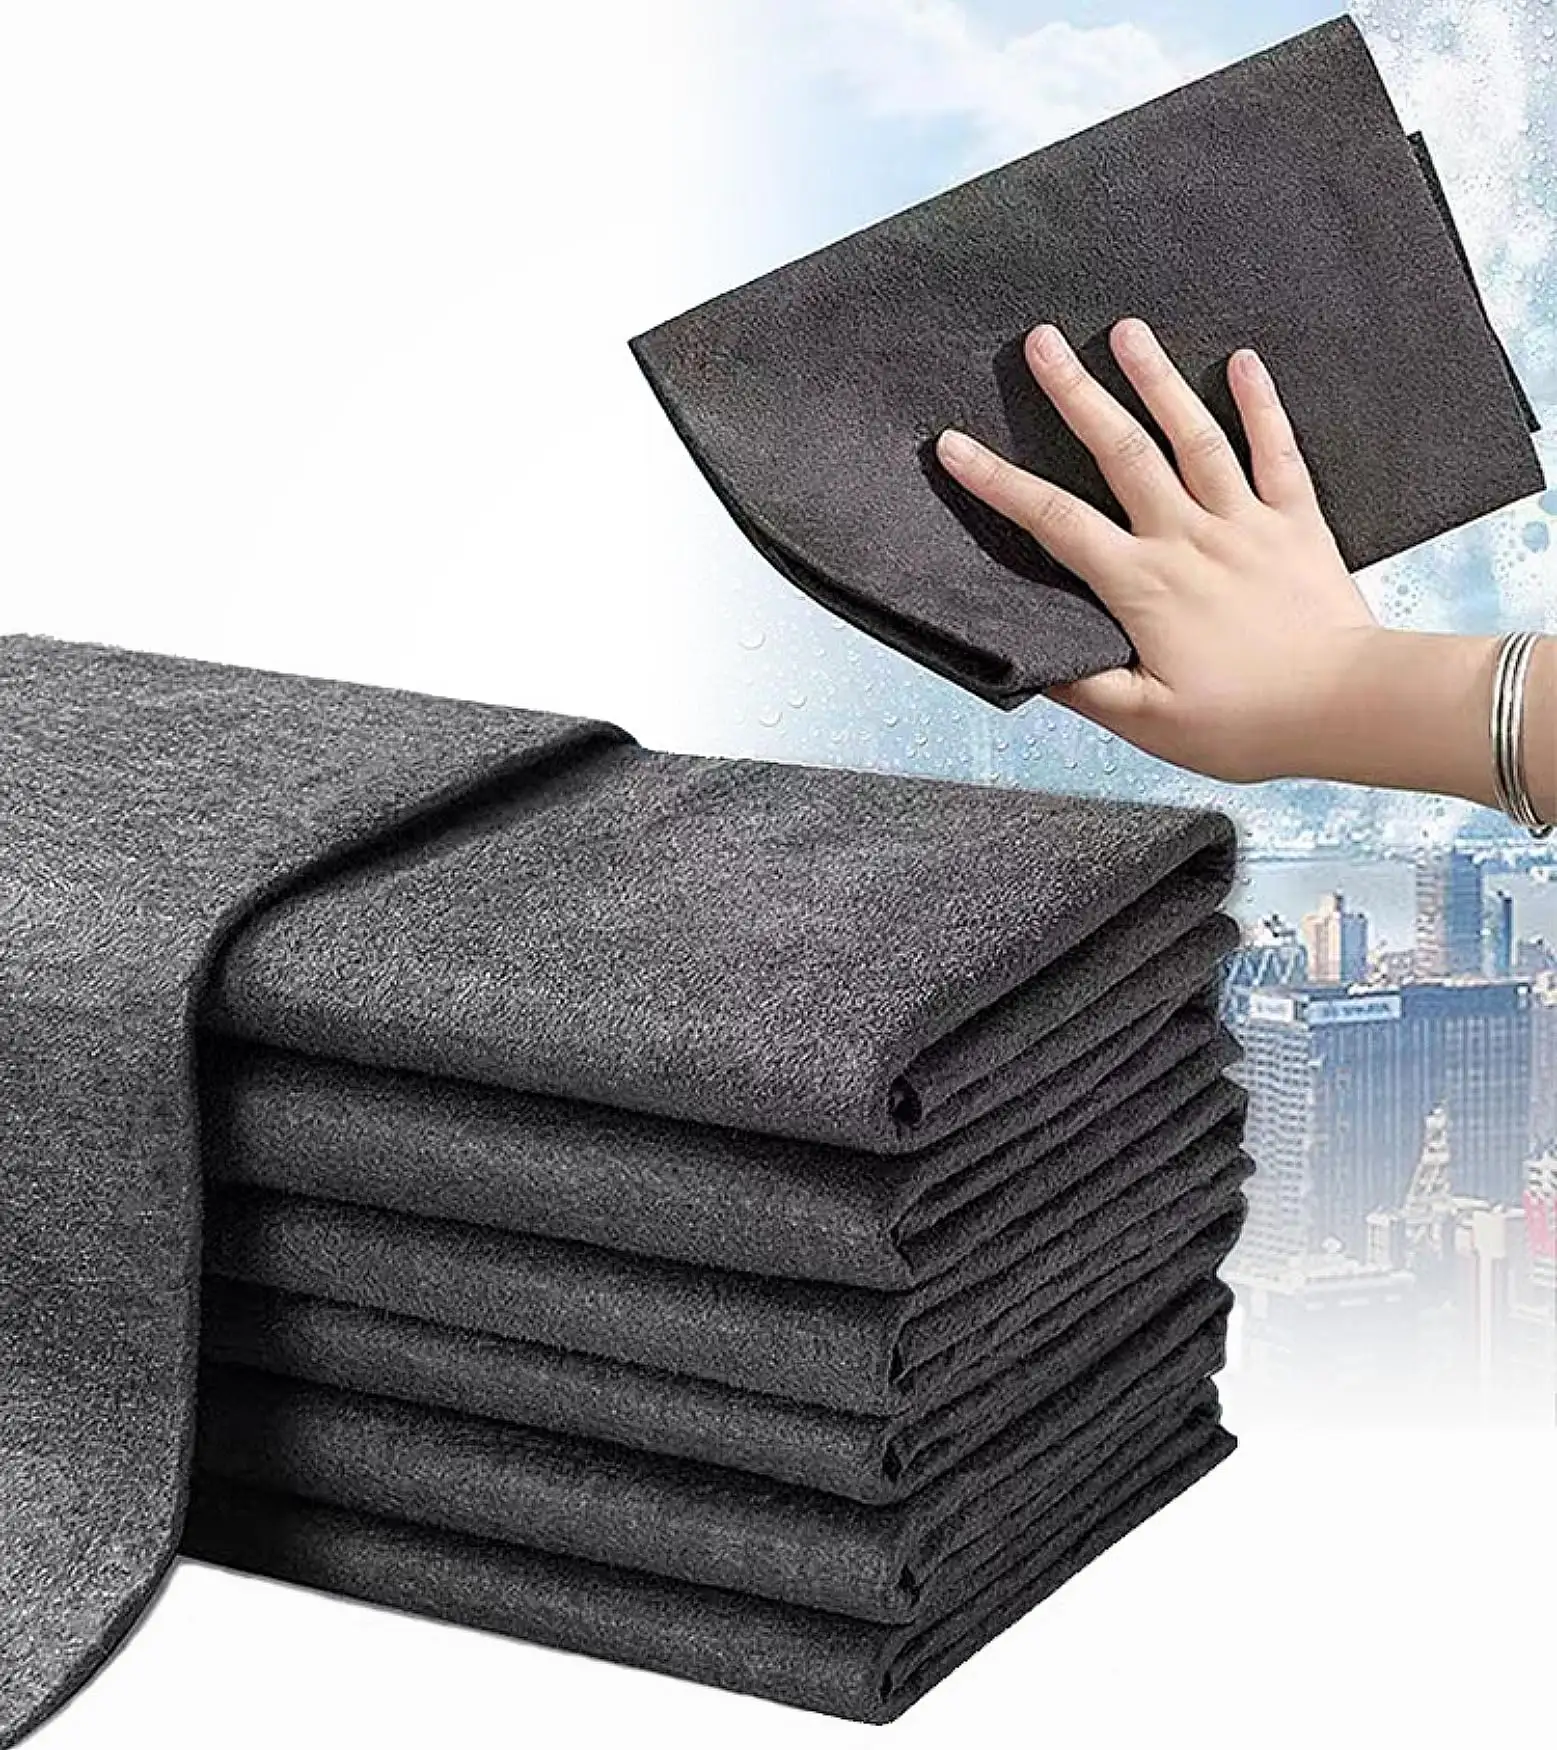 माइक्रोफाइबर जादू सफाई कपड़े बिना ट्रेस और खिड़कियों, दर्पण, कांच के लिए वॉटरमार्क जादू सफाई तौलिया